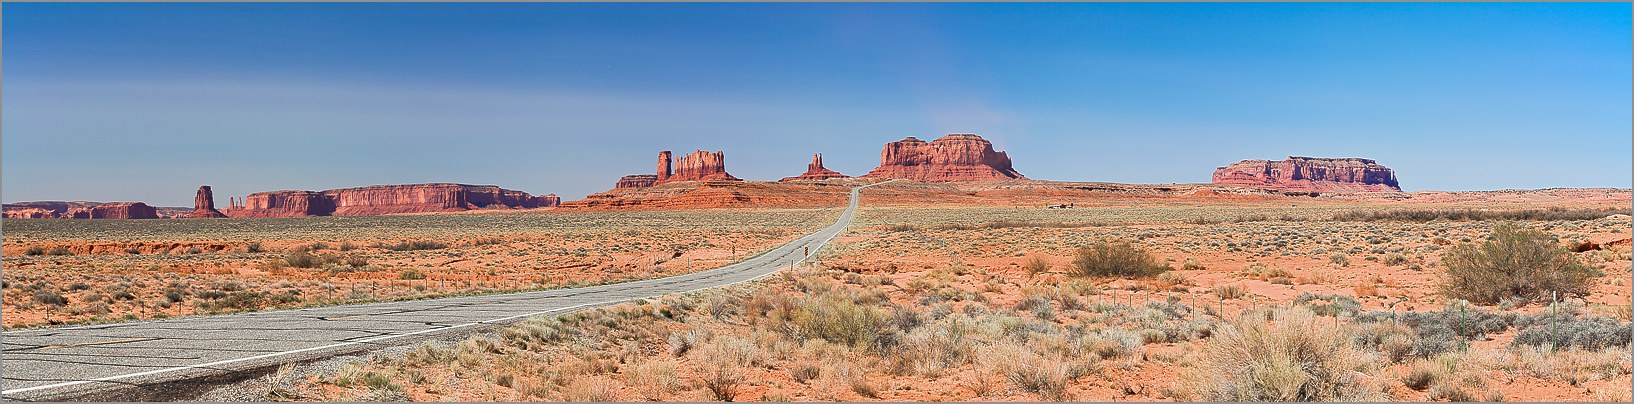 Monument Valley (Navajo Tribal Park) Eagle Mesa, Sentinel Mesa & the Big Indian Castle Butte en vue panomarique réalisée avec CANON 5D + EF 100 macro F2,8